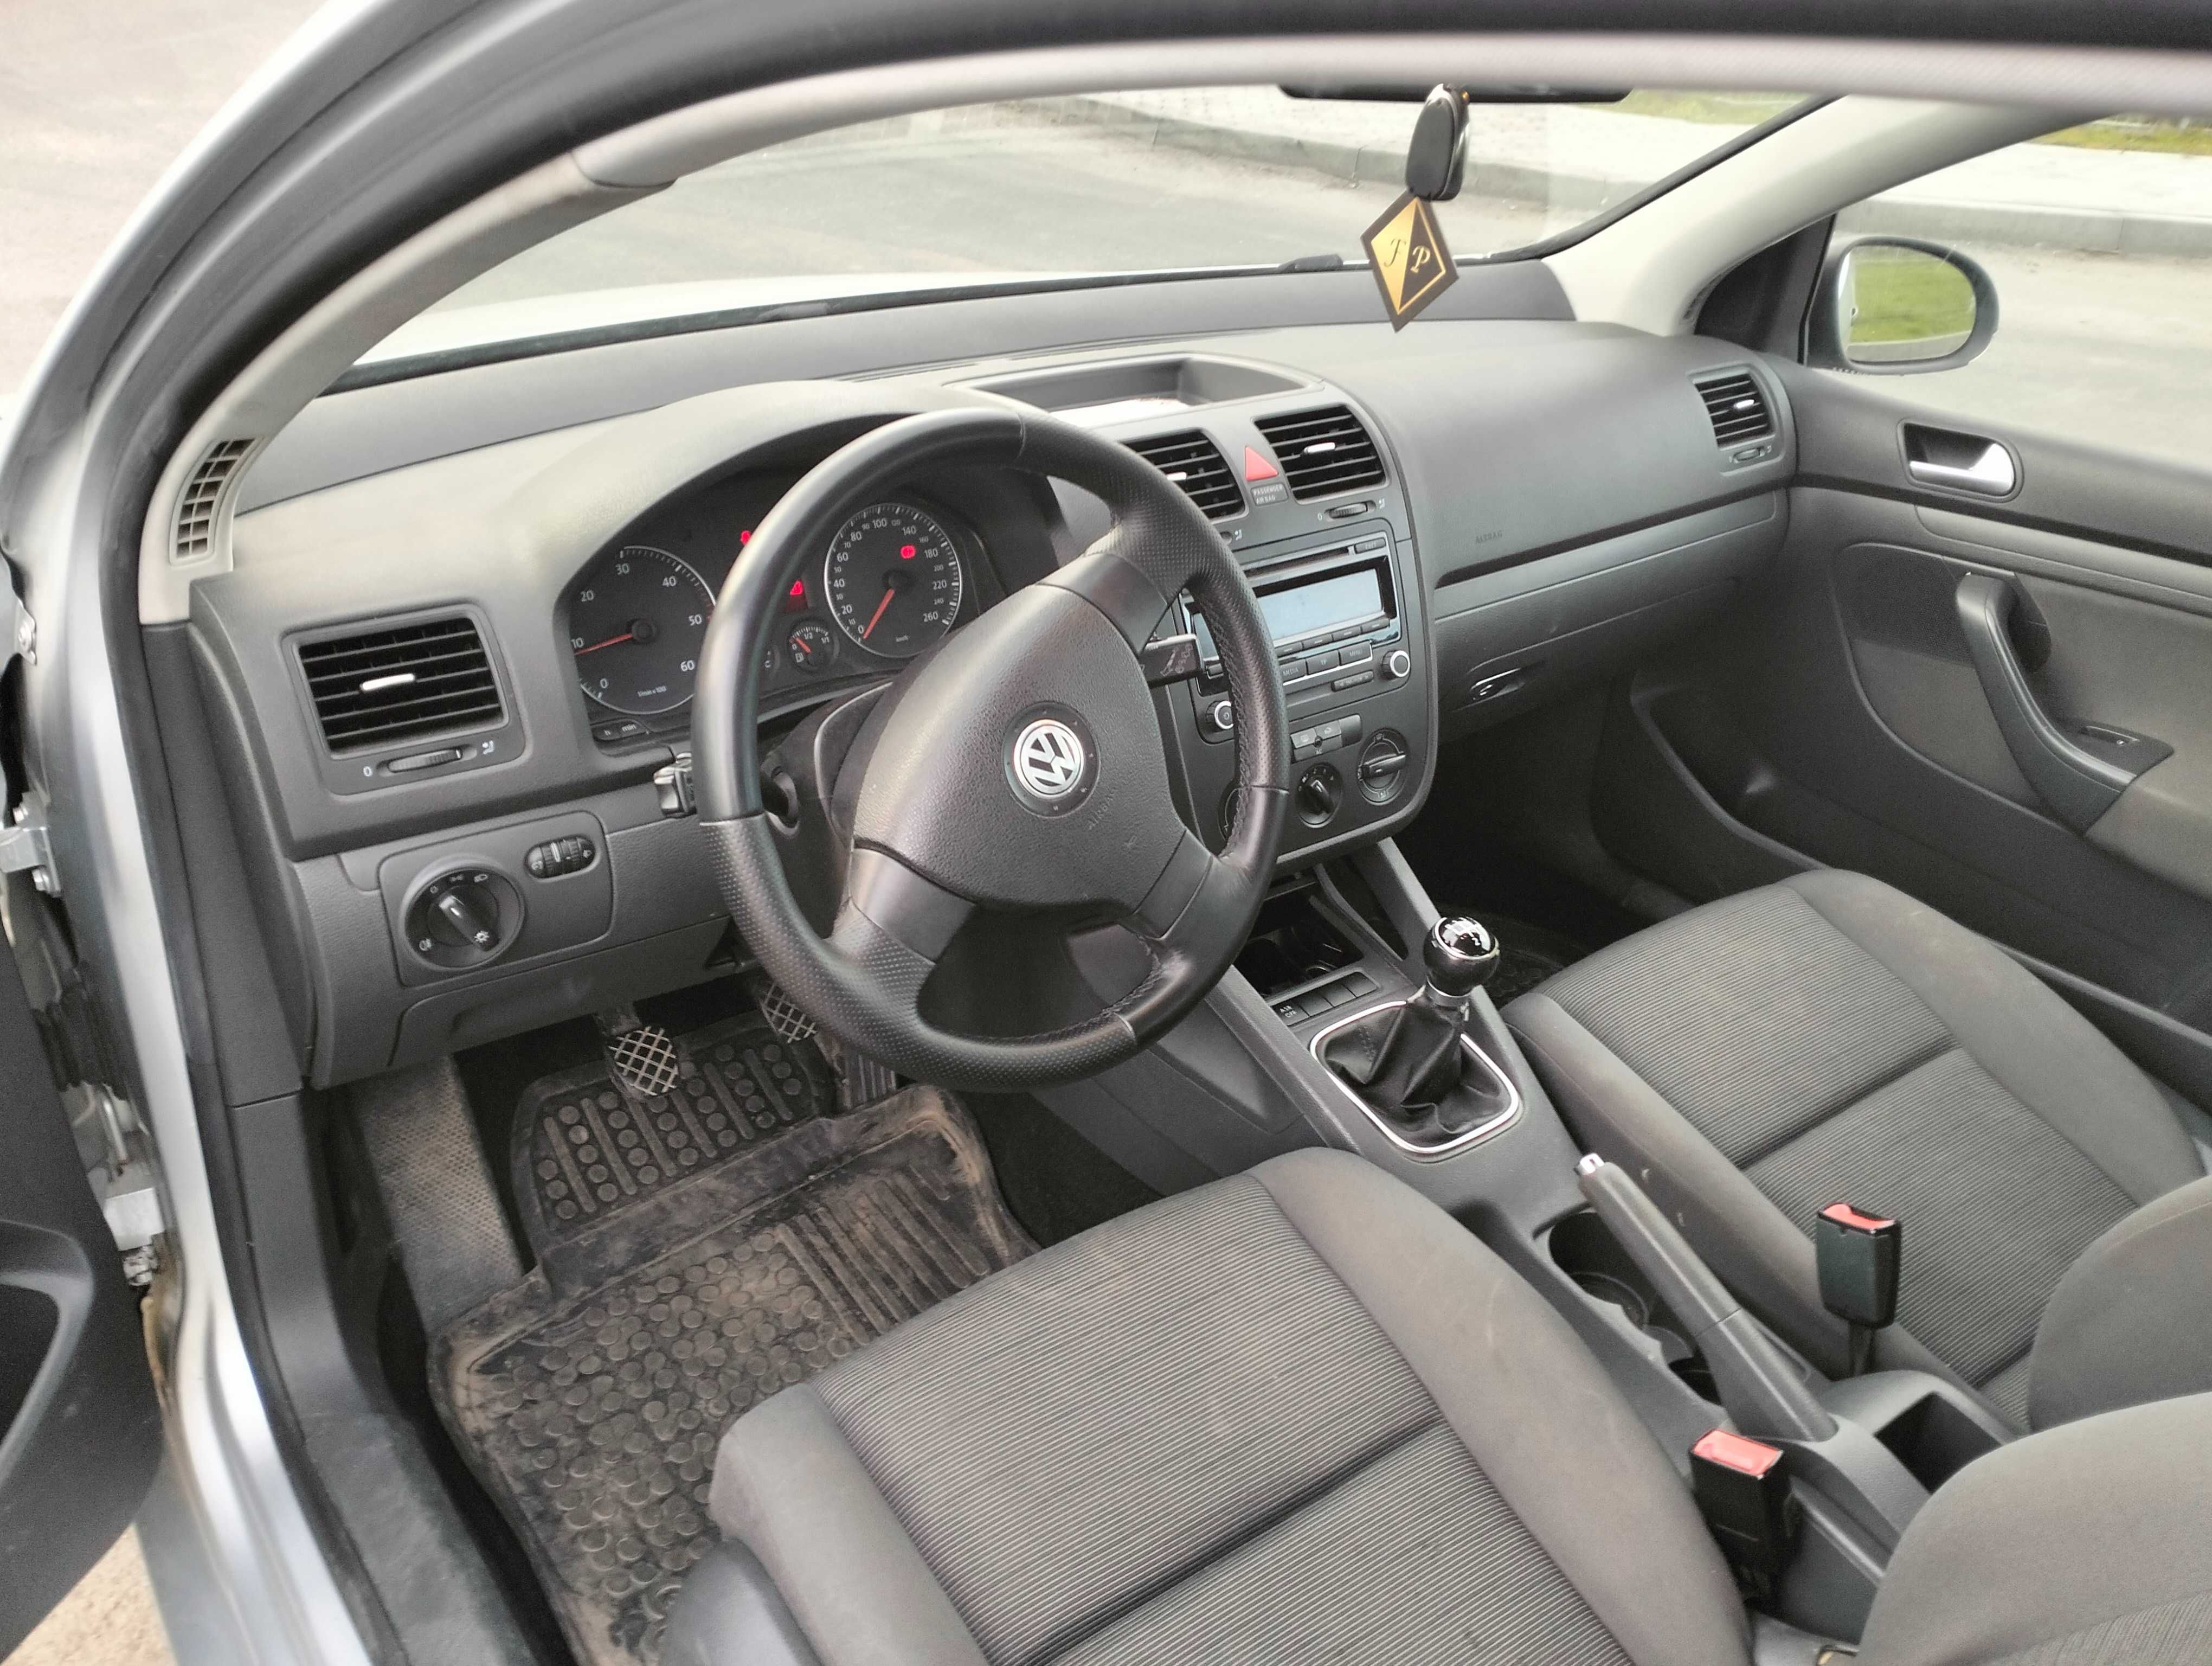 VW Golf V 1.9 tdi 105km klima*tempomat